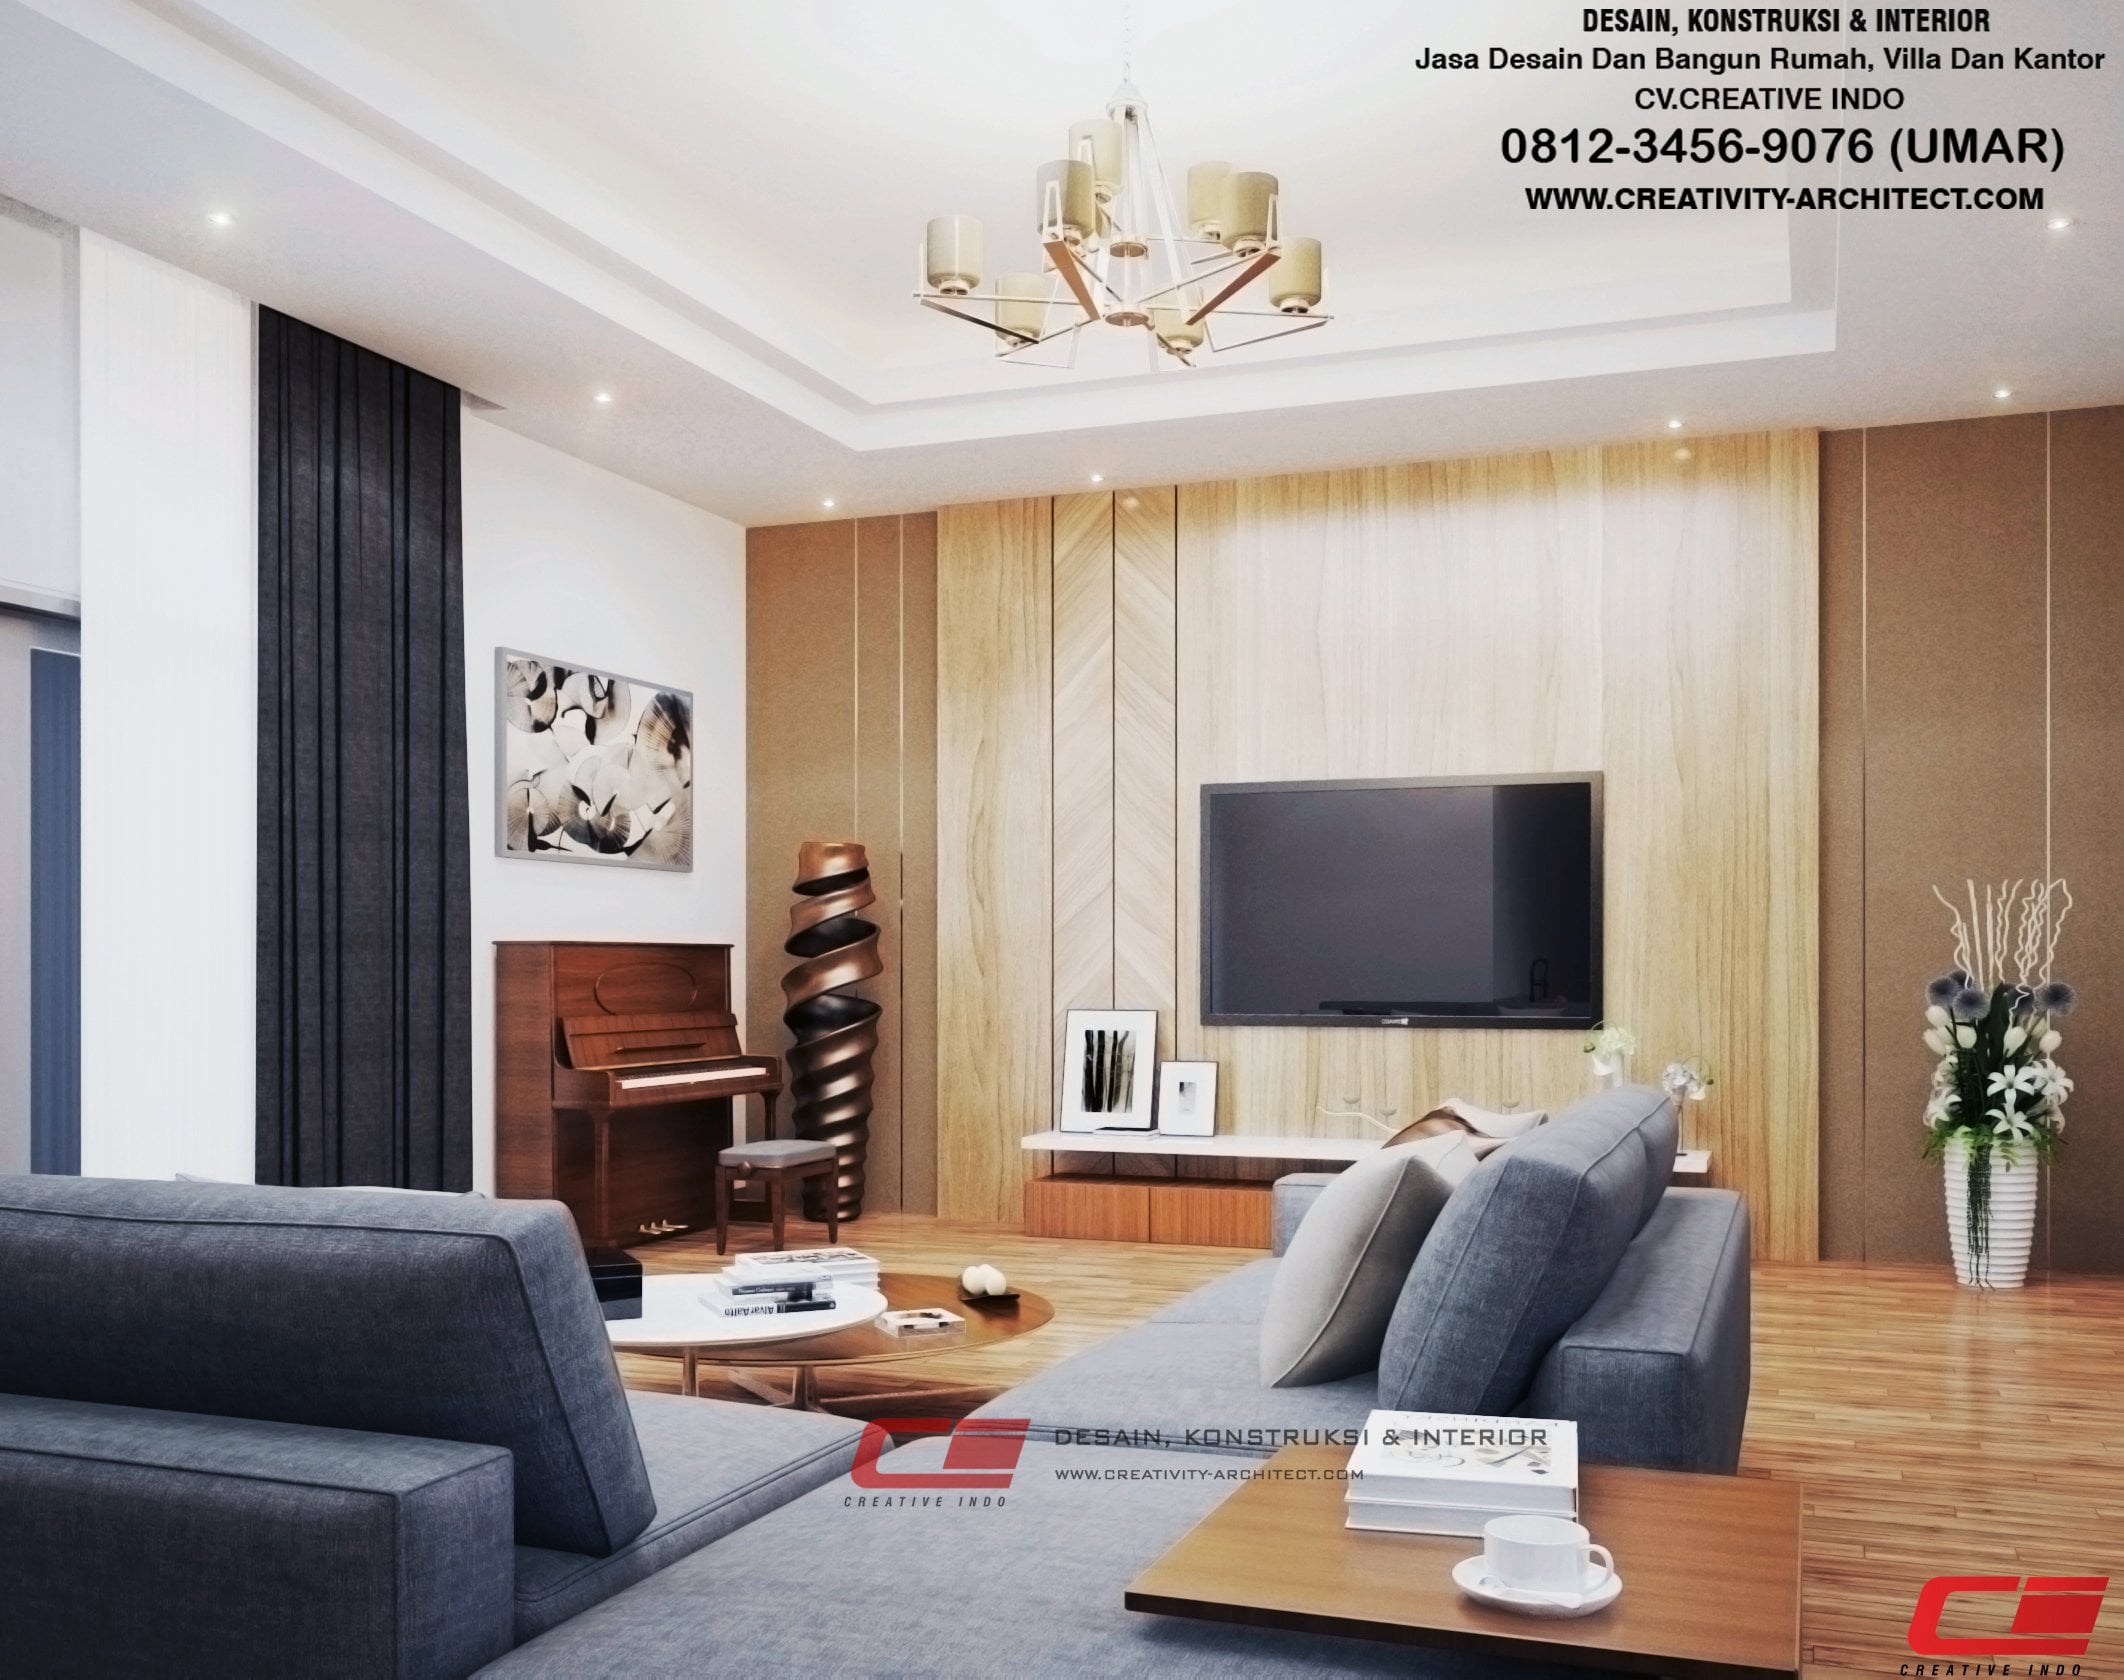 Kemewahan Desain Interior Rumah Di Jogja 83 Tentang Inspirasi Untuk Merombak Rumah untuk Desain Interior Rumah Di Jogja